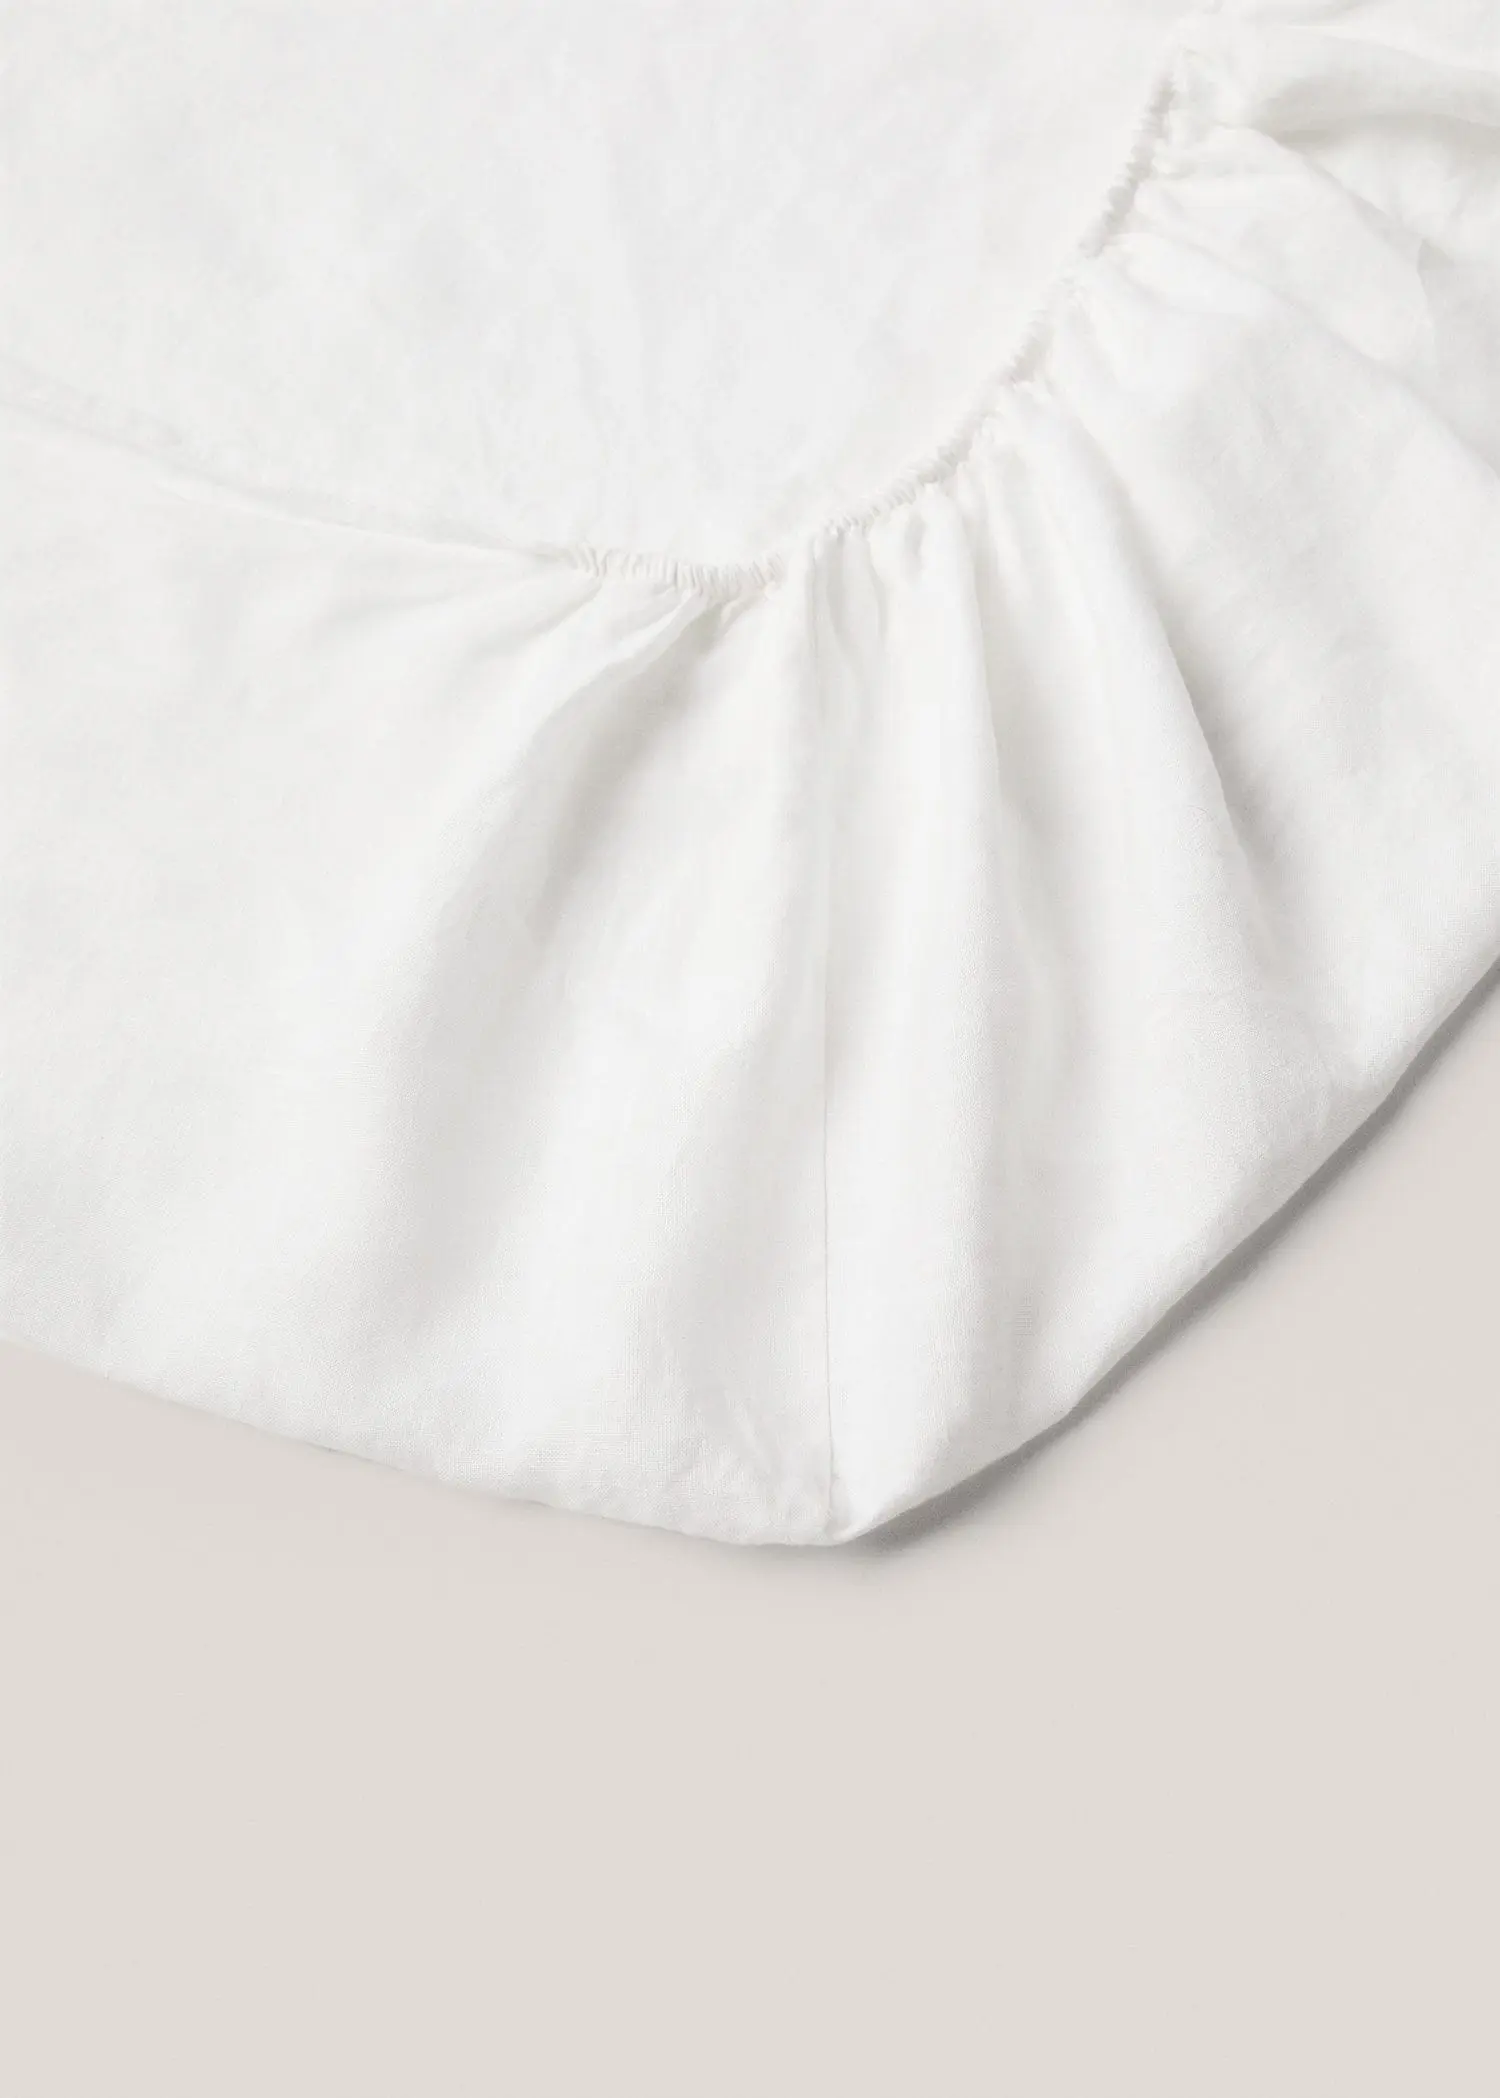 Mango 100% linen fitted sheet Queen bed. 2